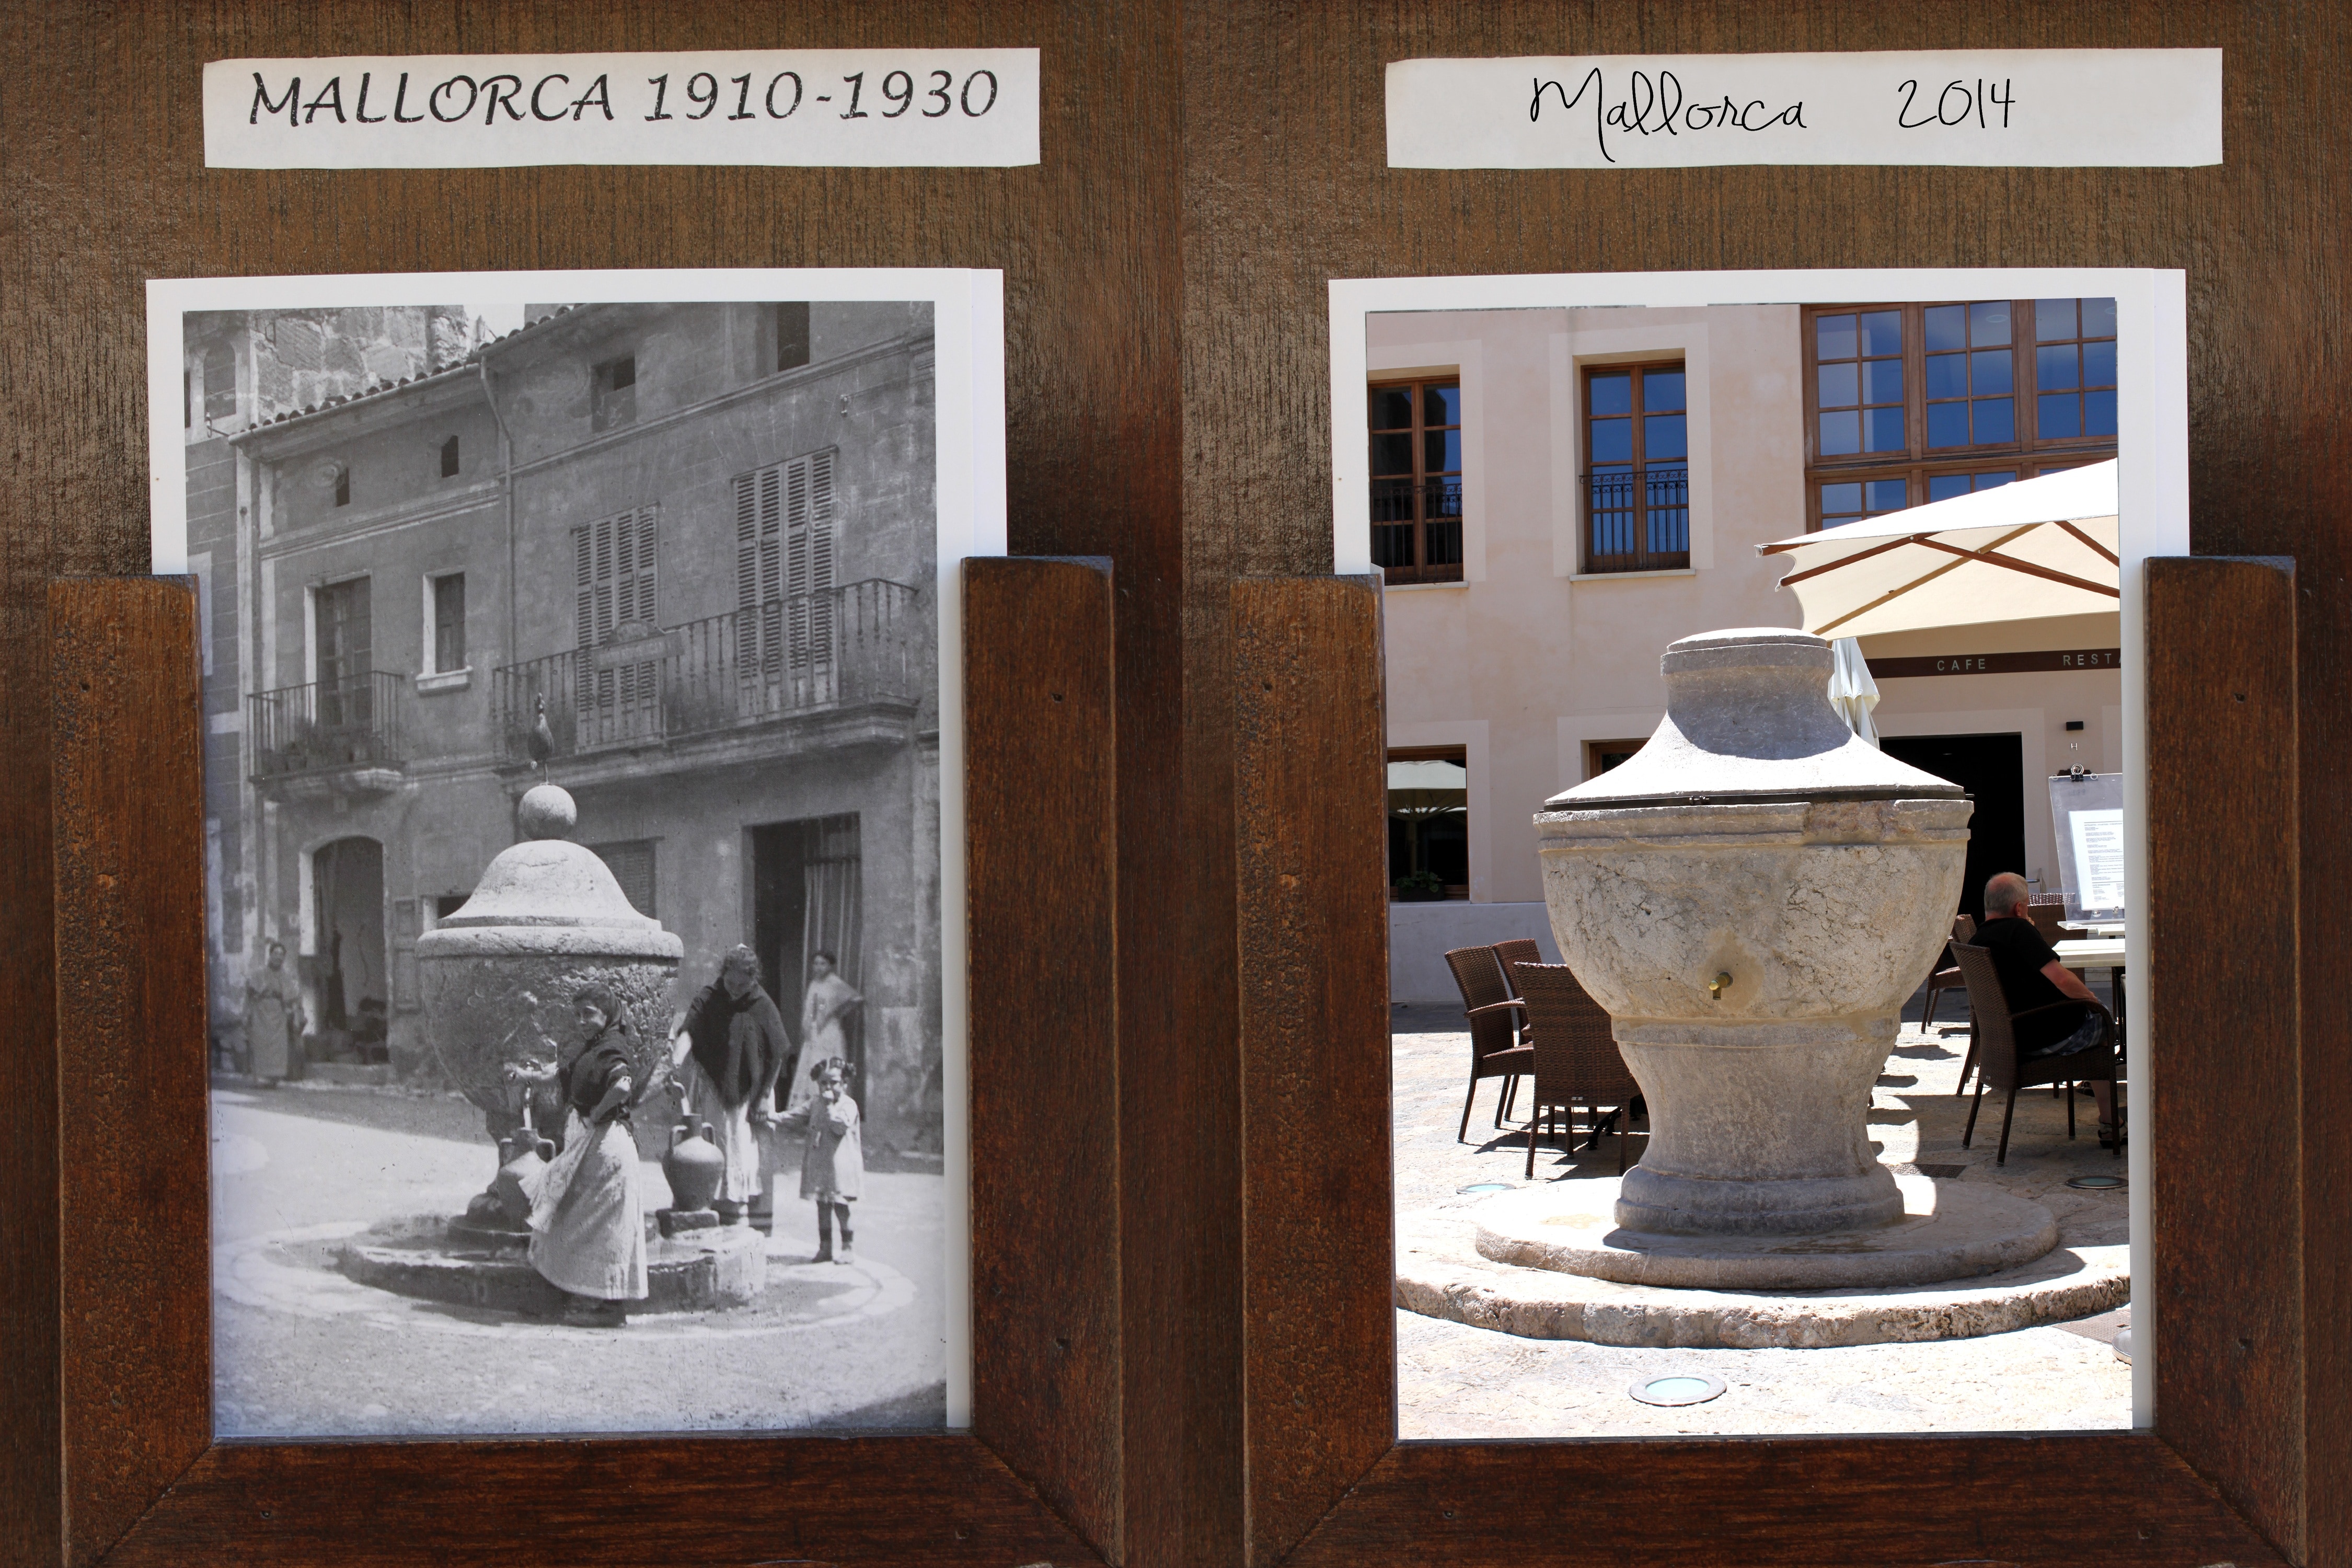 Mallorca photo on 1910-1930 beside photo of it on 2014